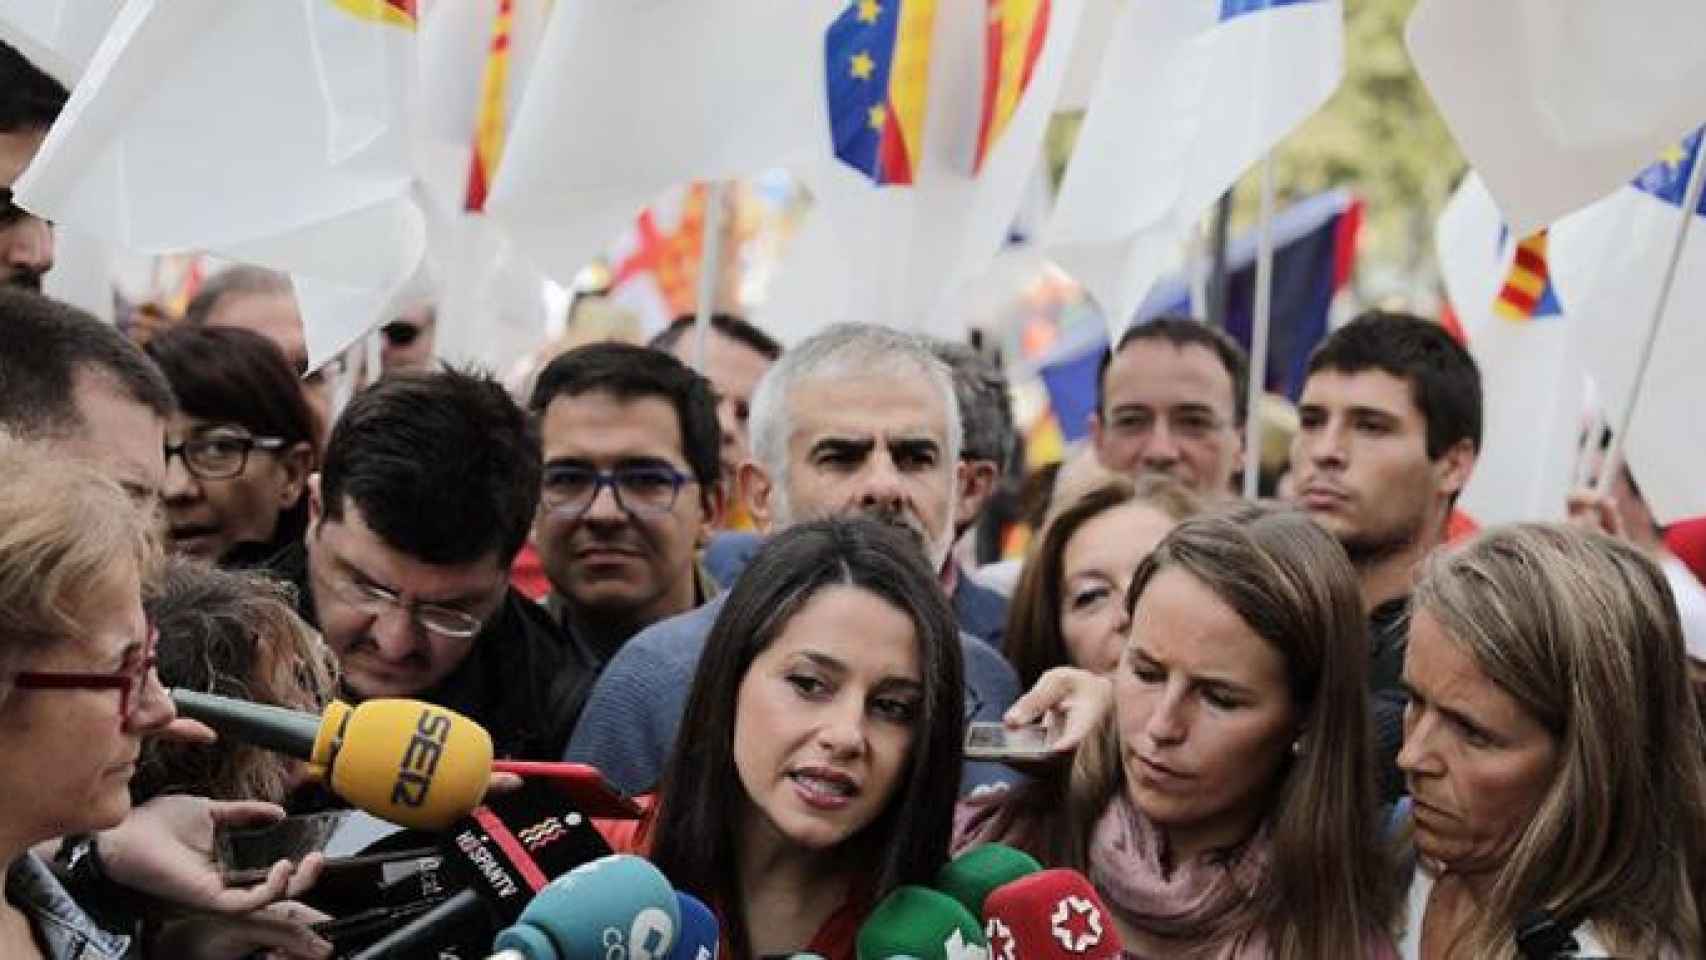 La líder catalana de Ciudadanos, Inés Arrimadas, atiende a los medios en la manifestación celebrada con motivo del 12 de octubre en Barcelona/ CG